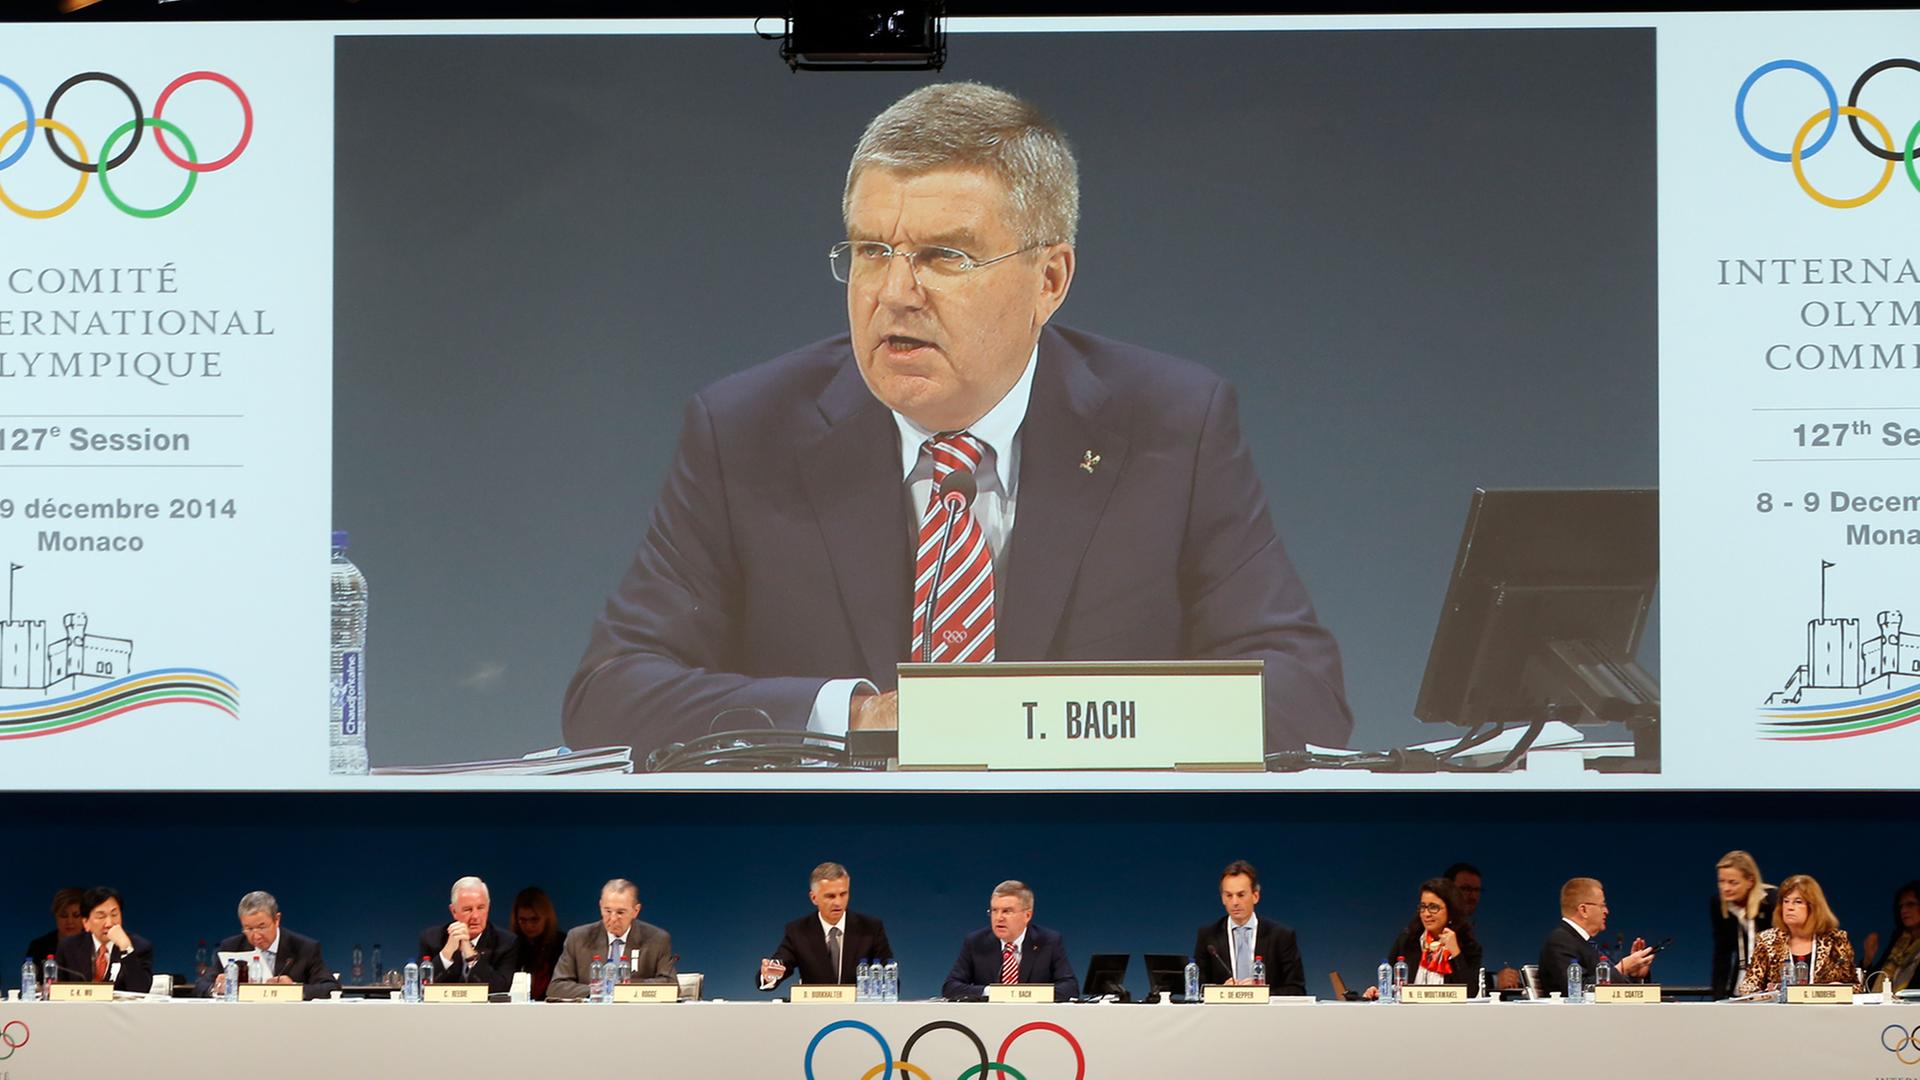 IOC-Präsident Bach sitzt neben den anderen Vorstandsmitgliedern und spricht vor dem Komittee beim Reformgipfel in Monaco. Über Bach selbst ist er noch einmal auf einem übergroßen Bildschirm zu sehen.